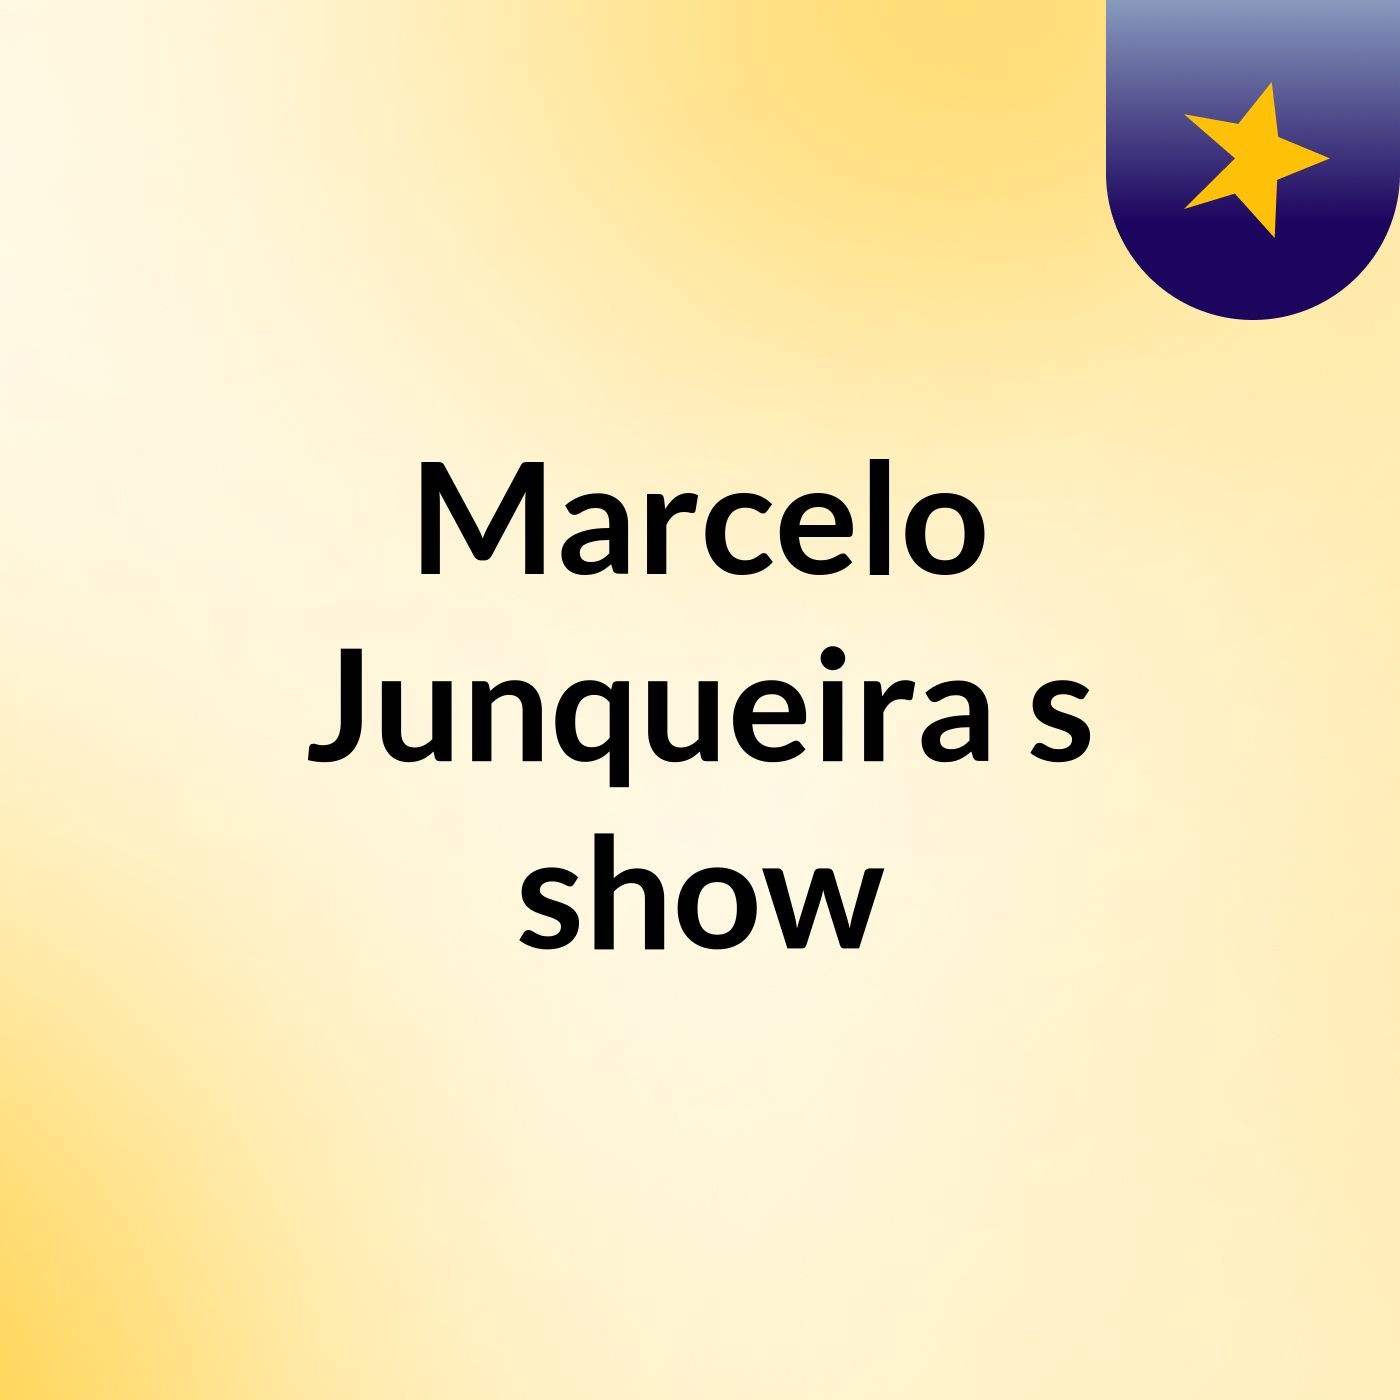 Marcelo Junqueira's show